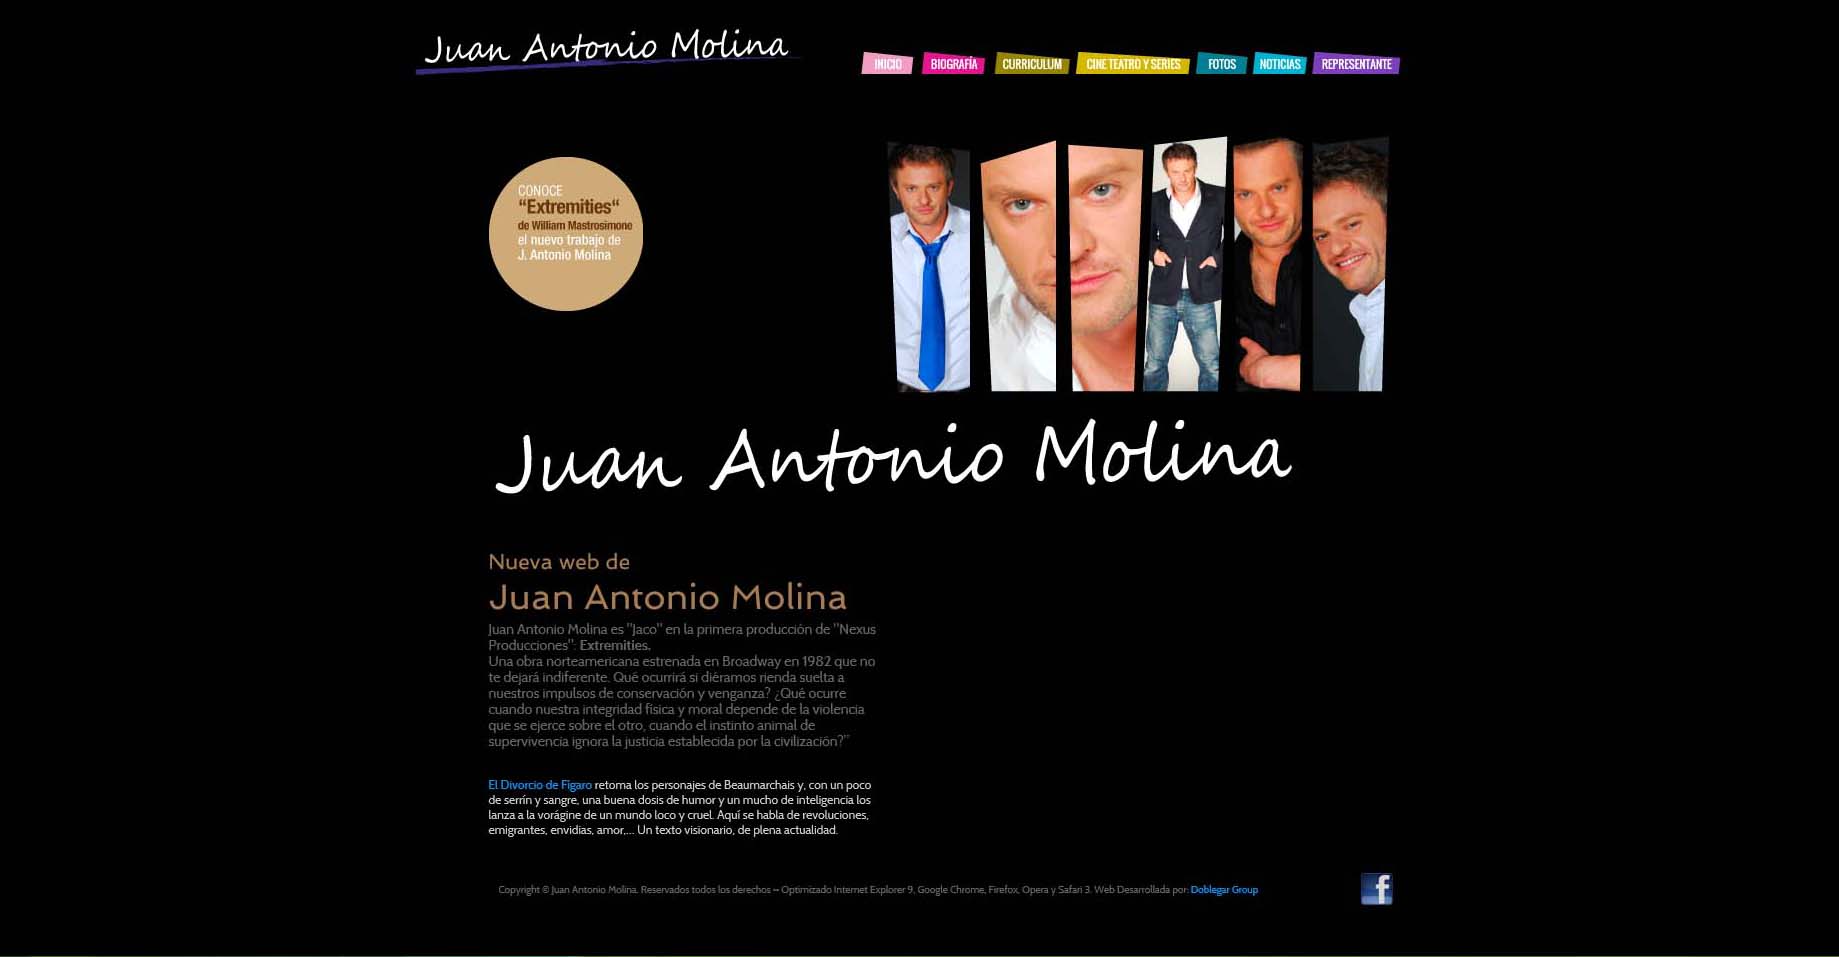 Juan Antonio Molina